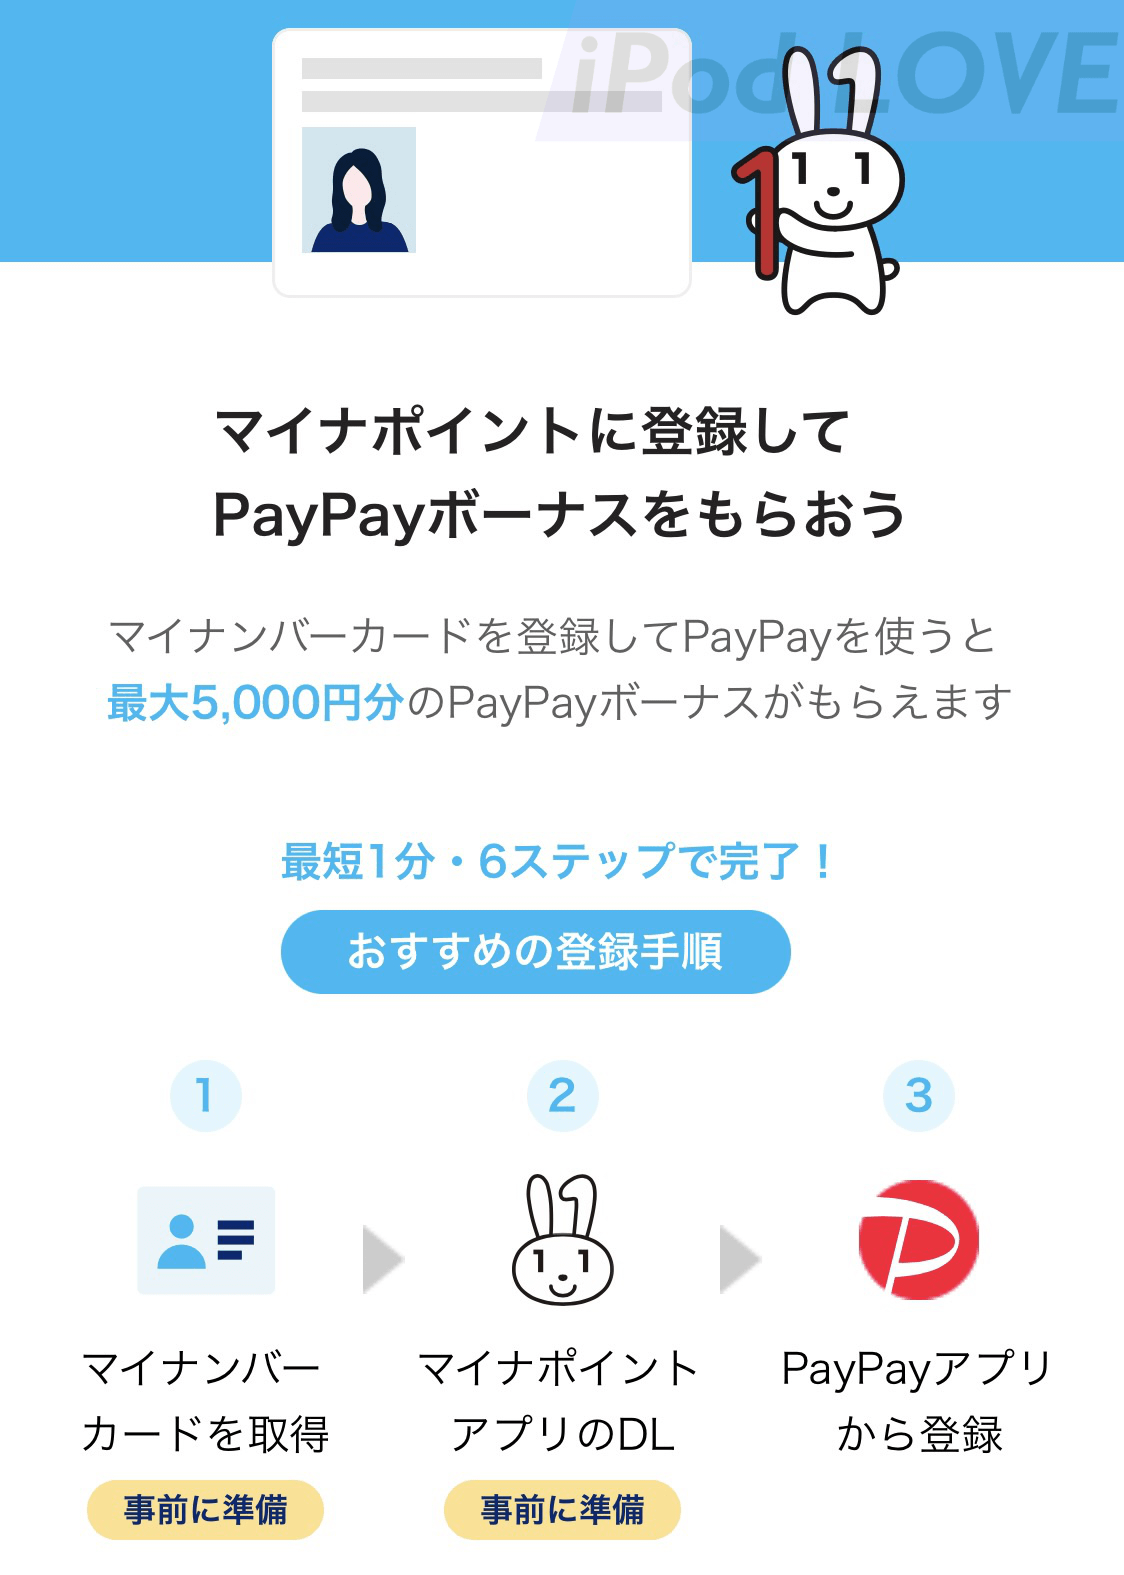 PayPay atobarai minapoint 08